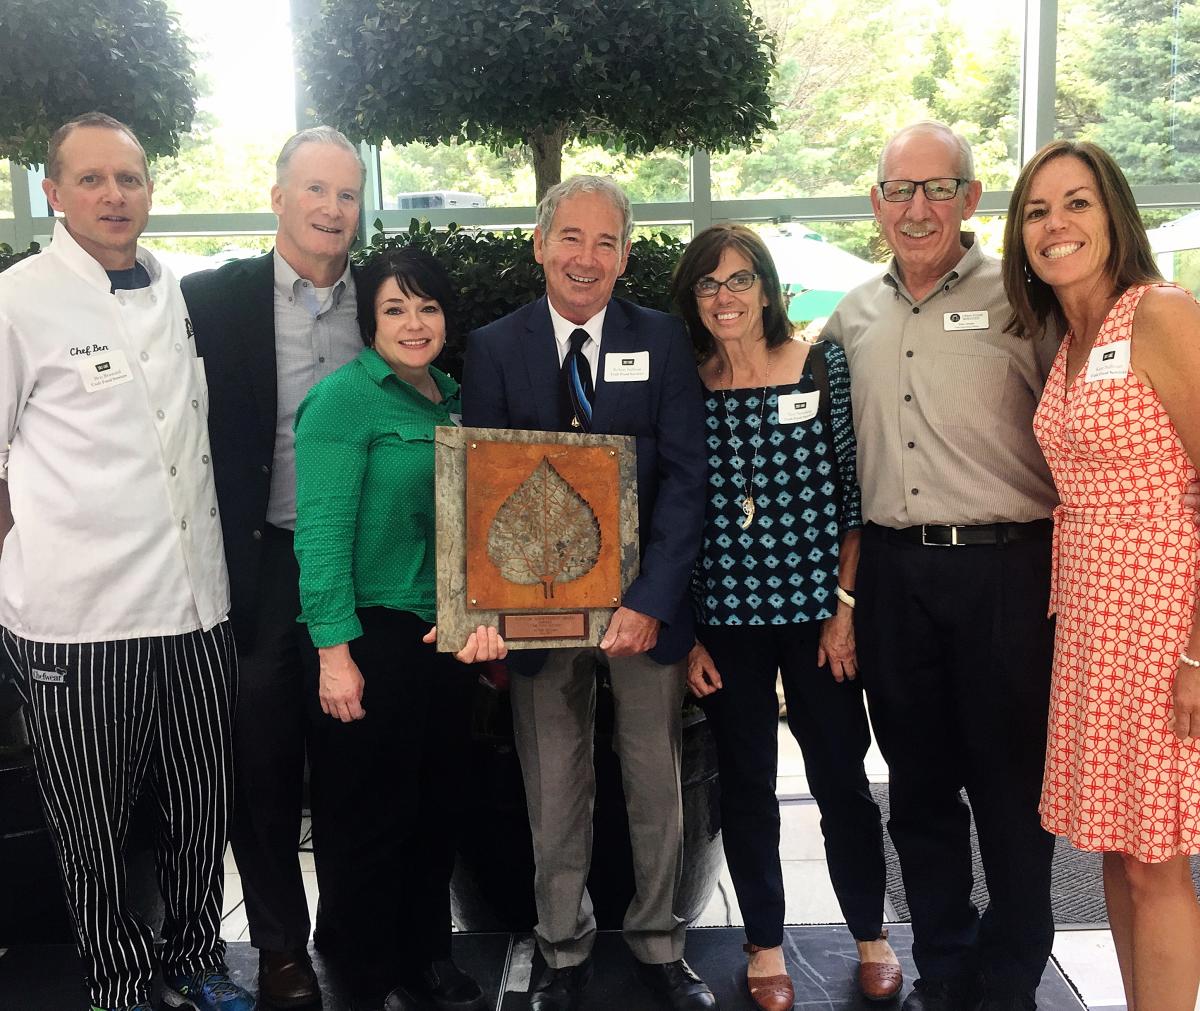 Visit Salt Lake Annual Tourism Award to Utah Food Services